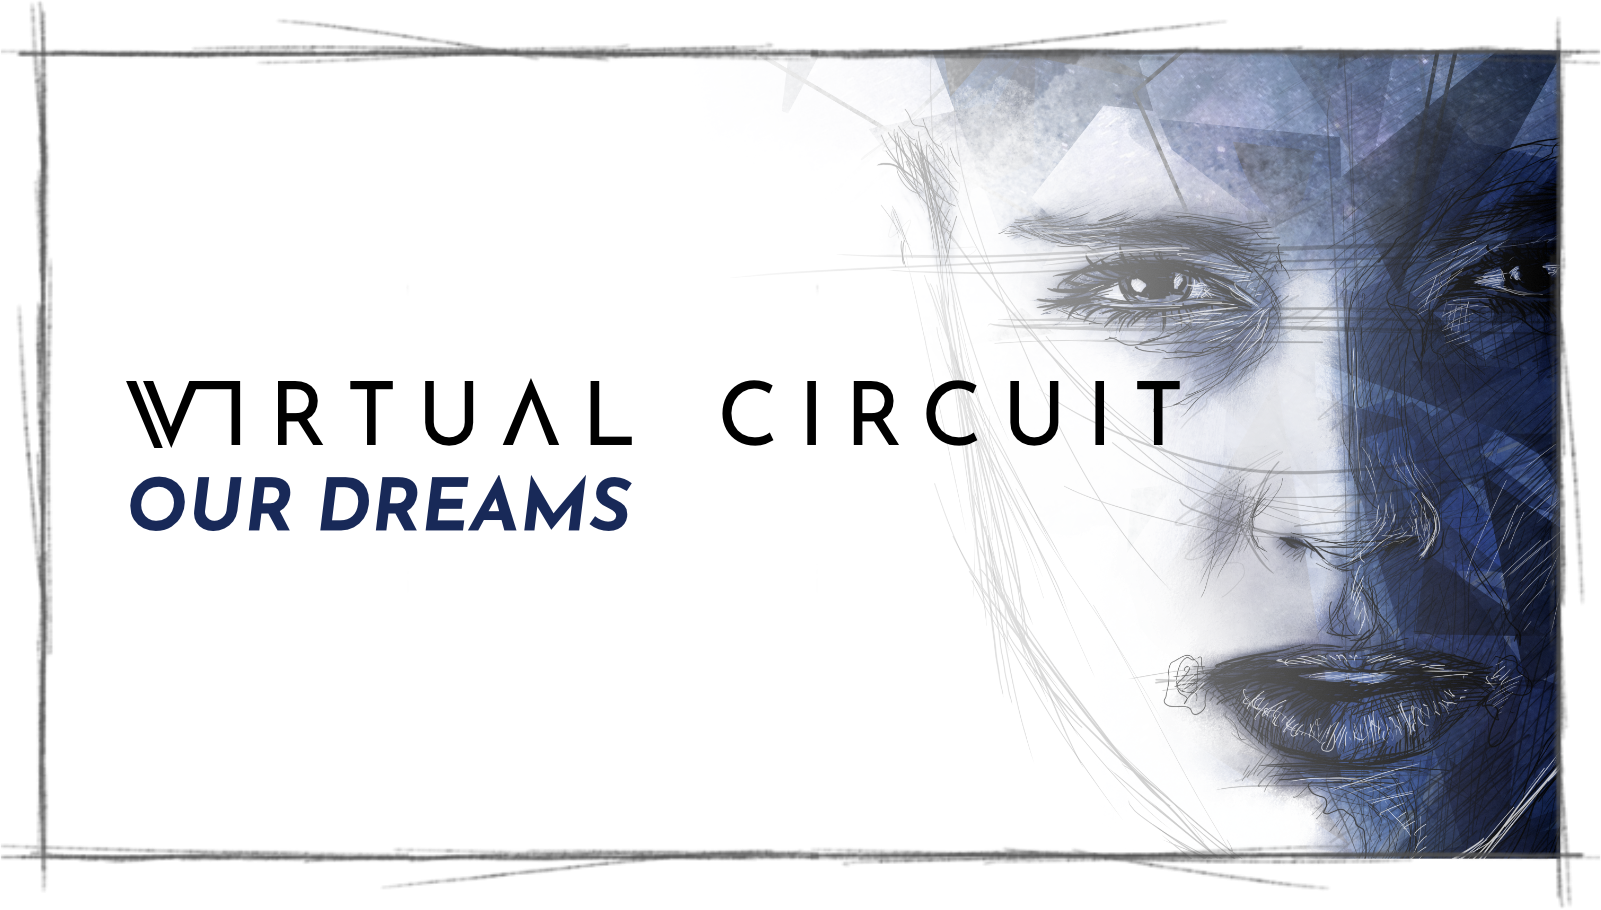 Ein Titelbild zur Projektvorstellung des Artworks für Virtual Circuit, auf dem das Bandlogo und die Sketch-Style Illustration eines Gesichts rechts zu sehen sind